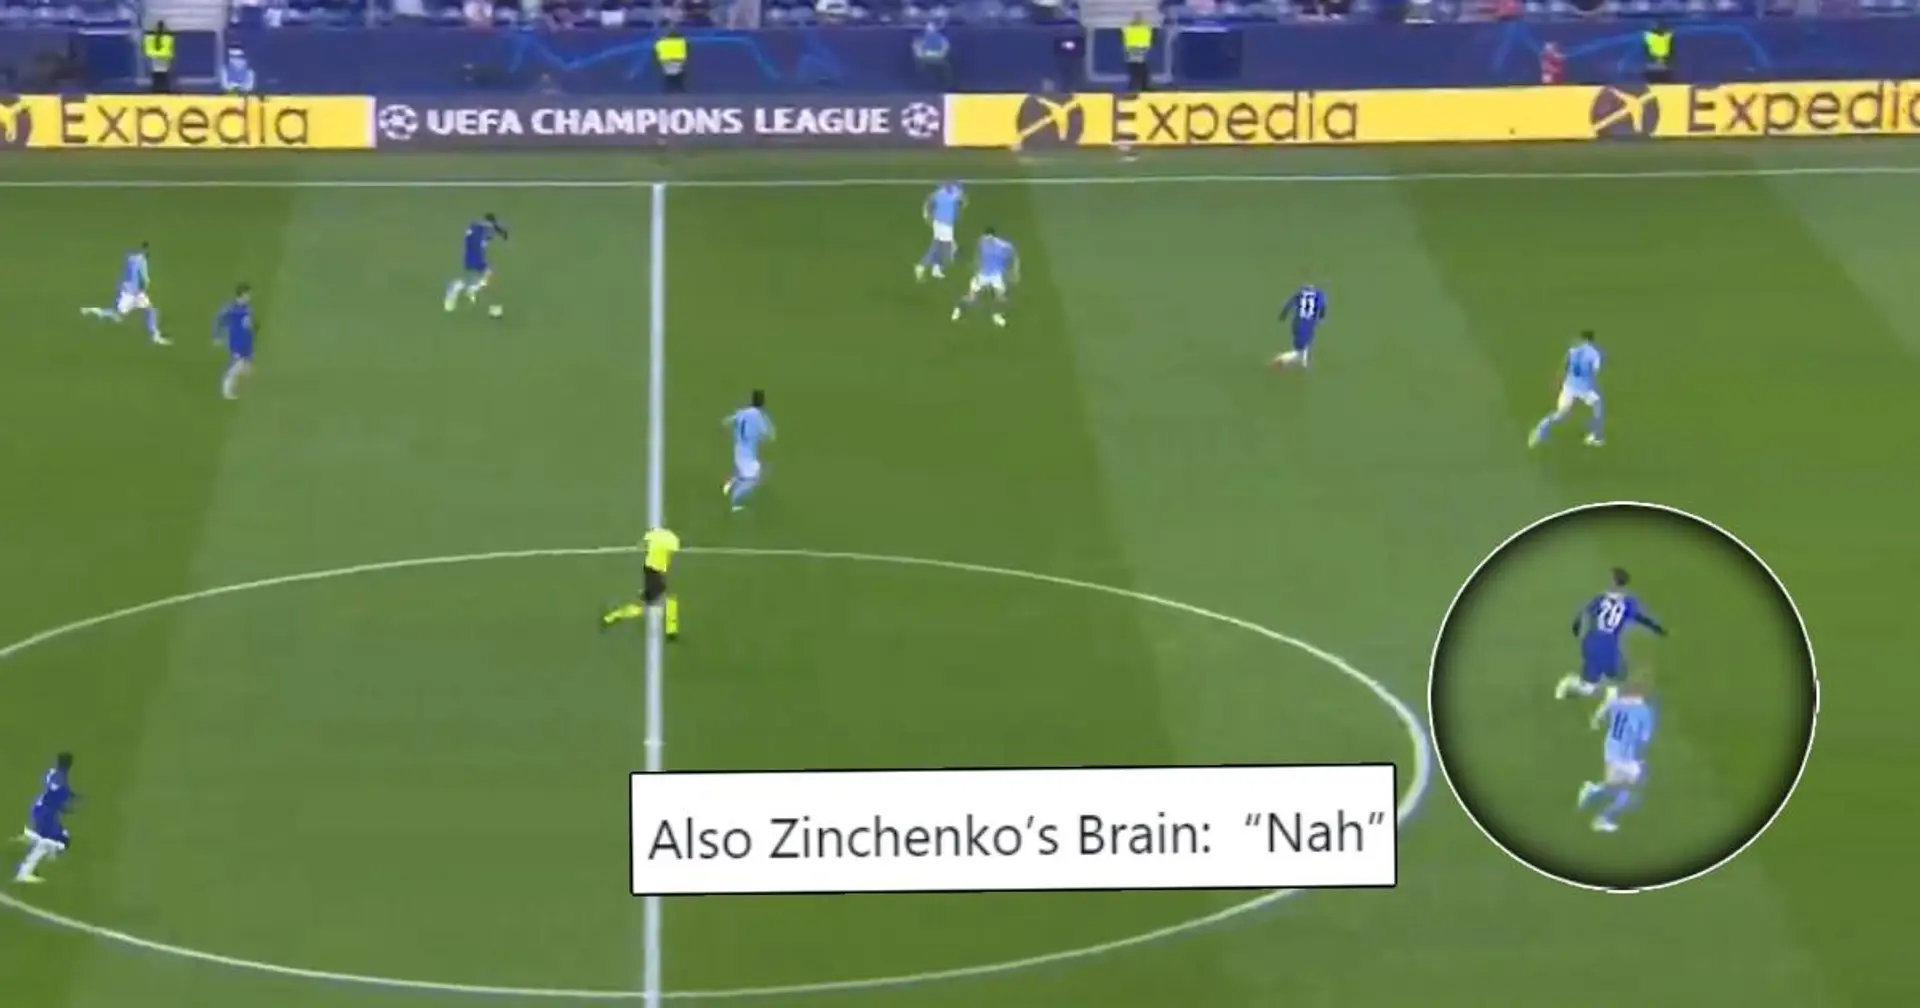 Le défenseur de Man City Zinchenko critiqué pour sa défense "paresseuse" en finale de la Ligue des champions